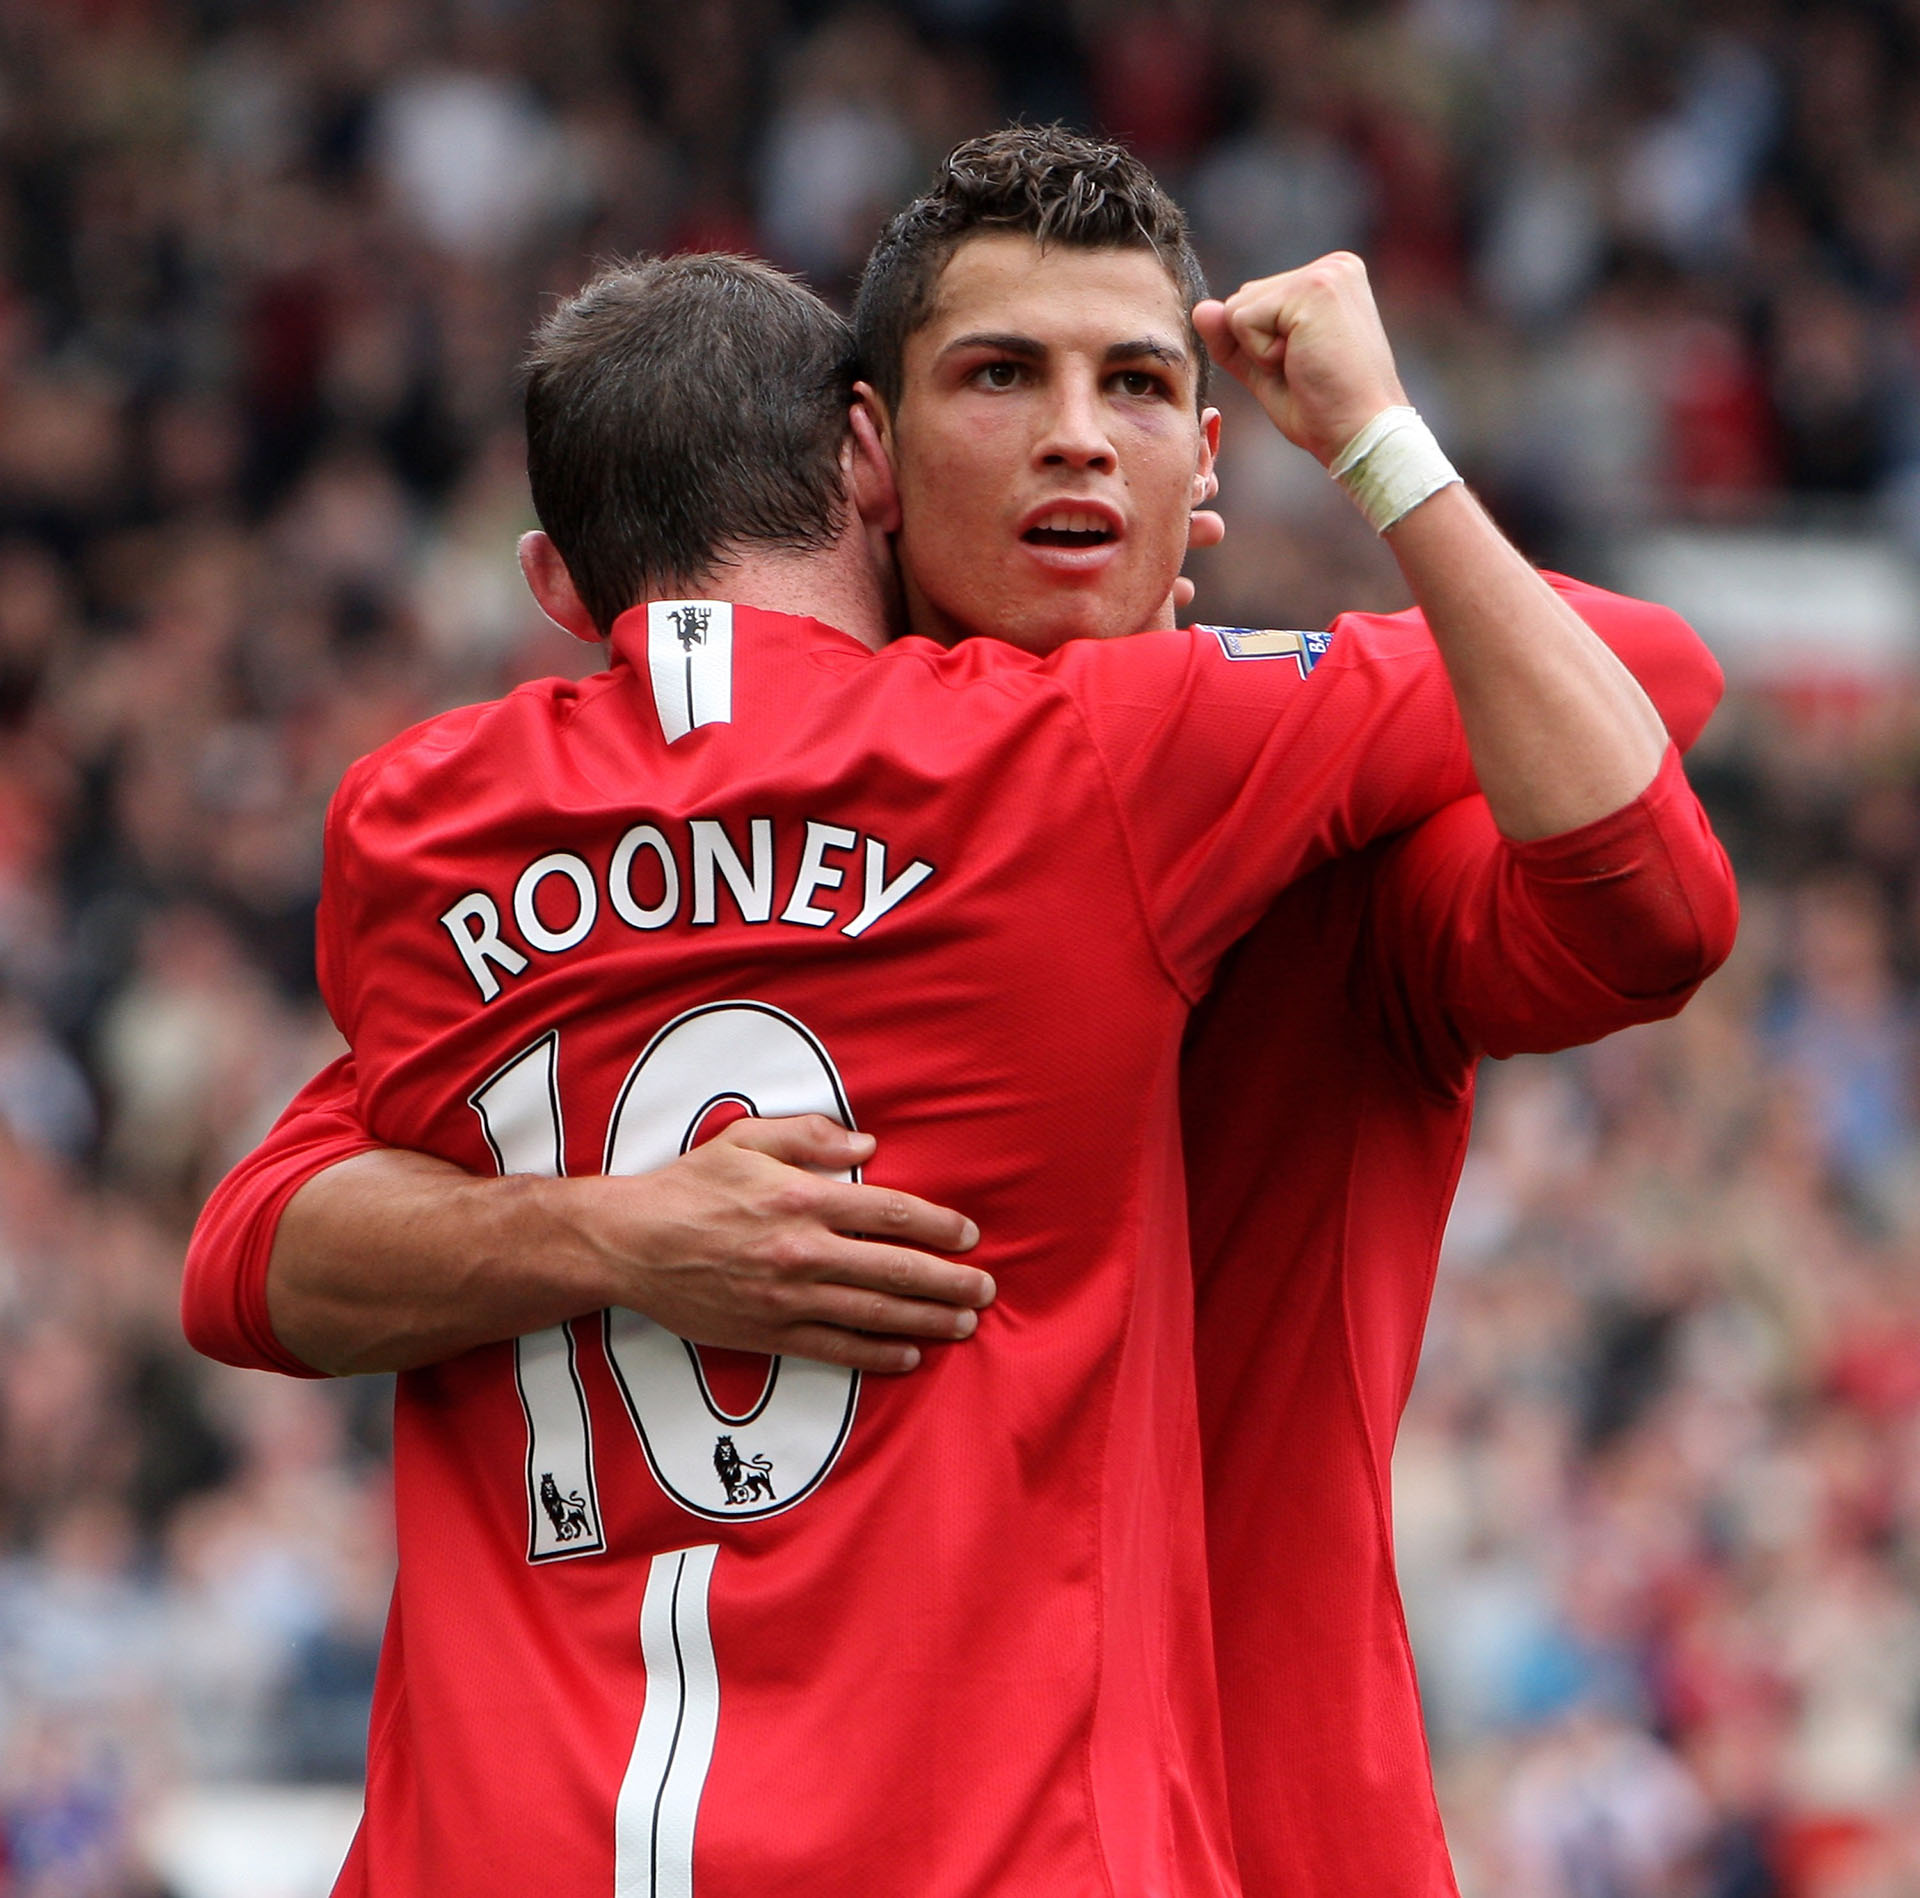 Ronaldo y Rooney compartieron equipo en el Manchester United (Getty)